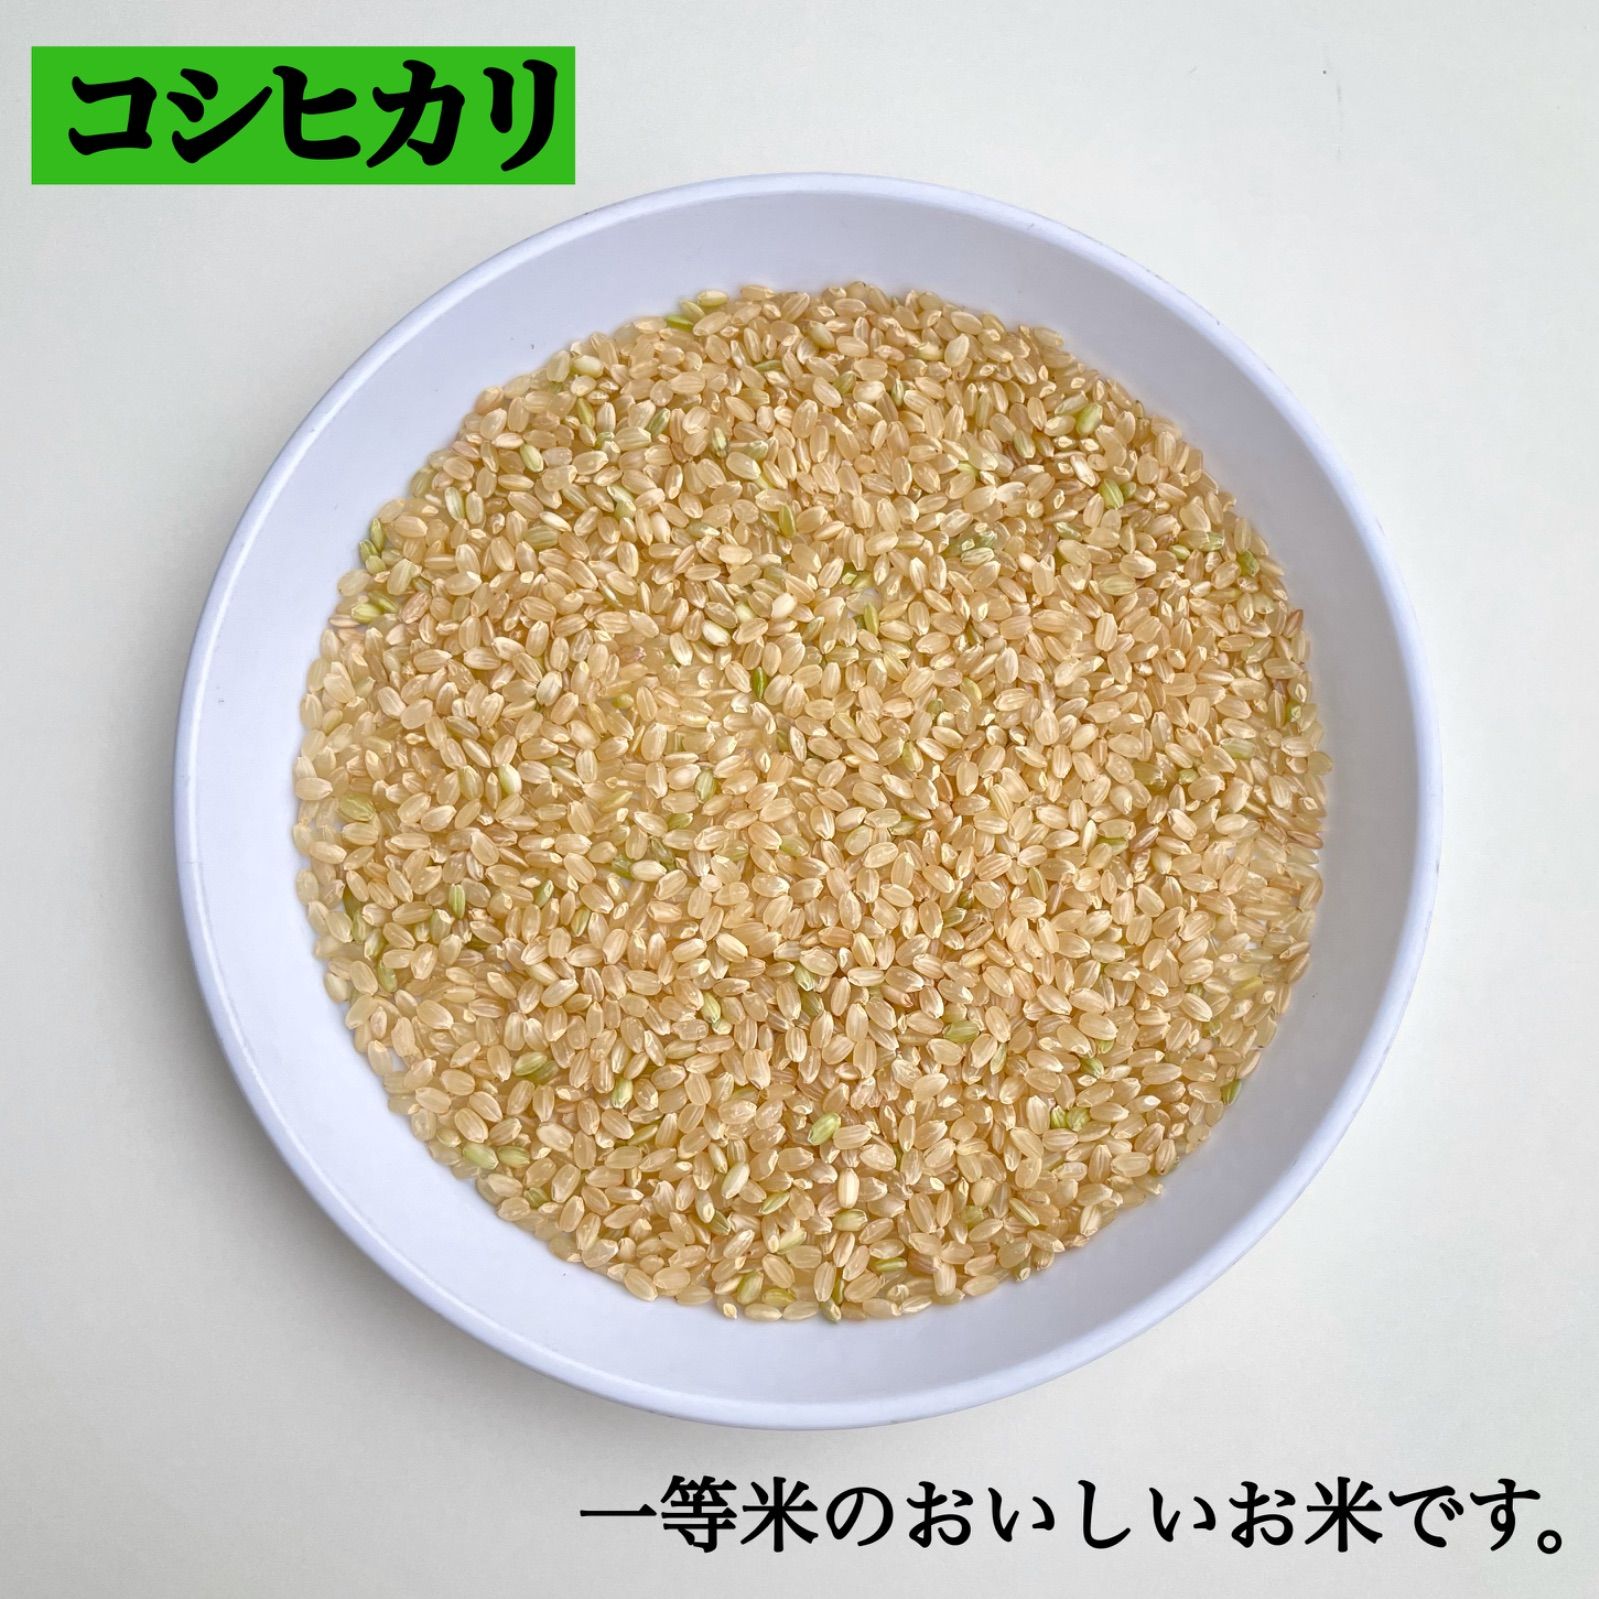 【即購入OK】新潟県長岡産令和2年度新米コシヒカリ整粒20キロ玄米【精米無料】